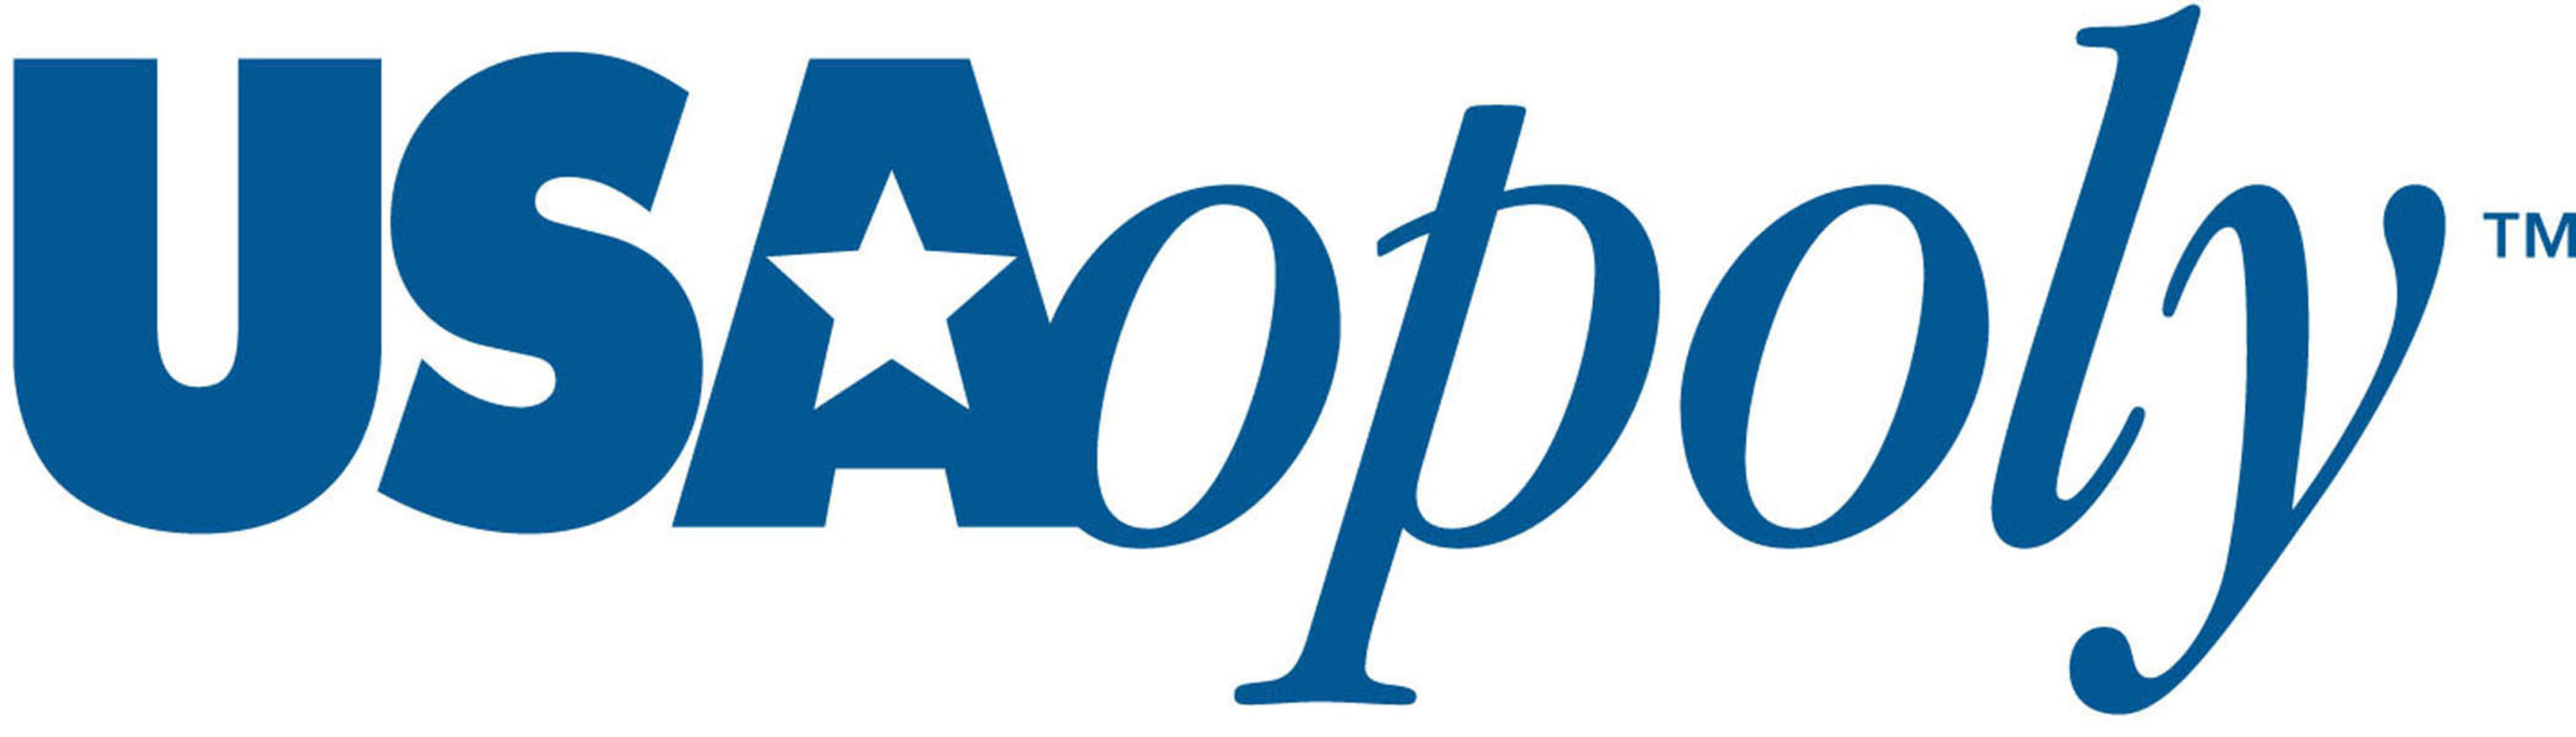 USAopoly Logo. (PRNewsFoto/USAopoly) (PRNewsFoto/USAOPOLY)